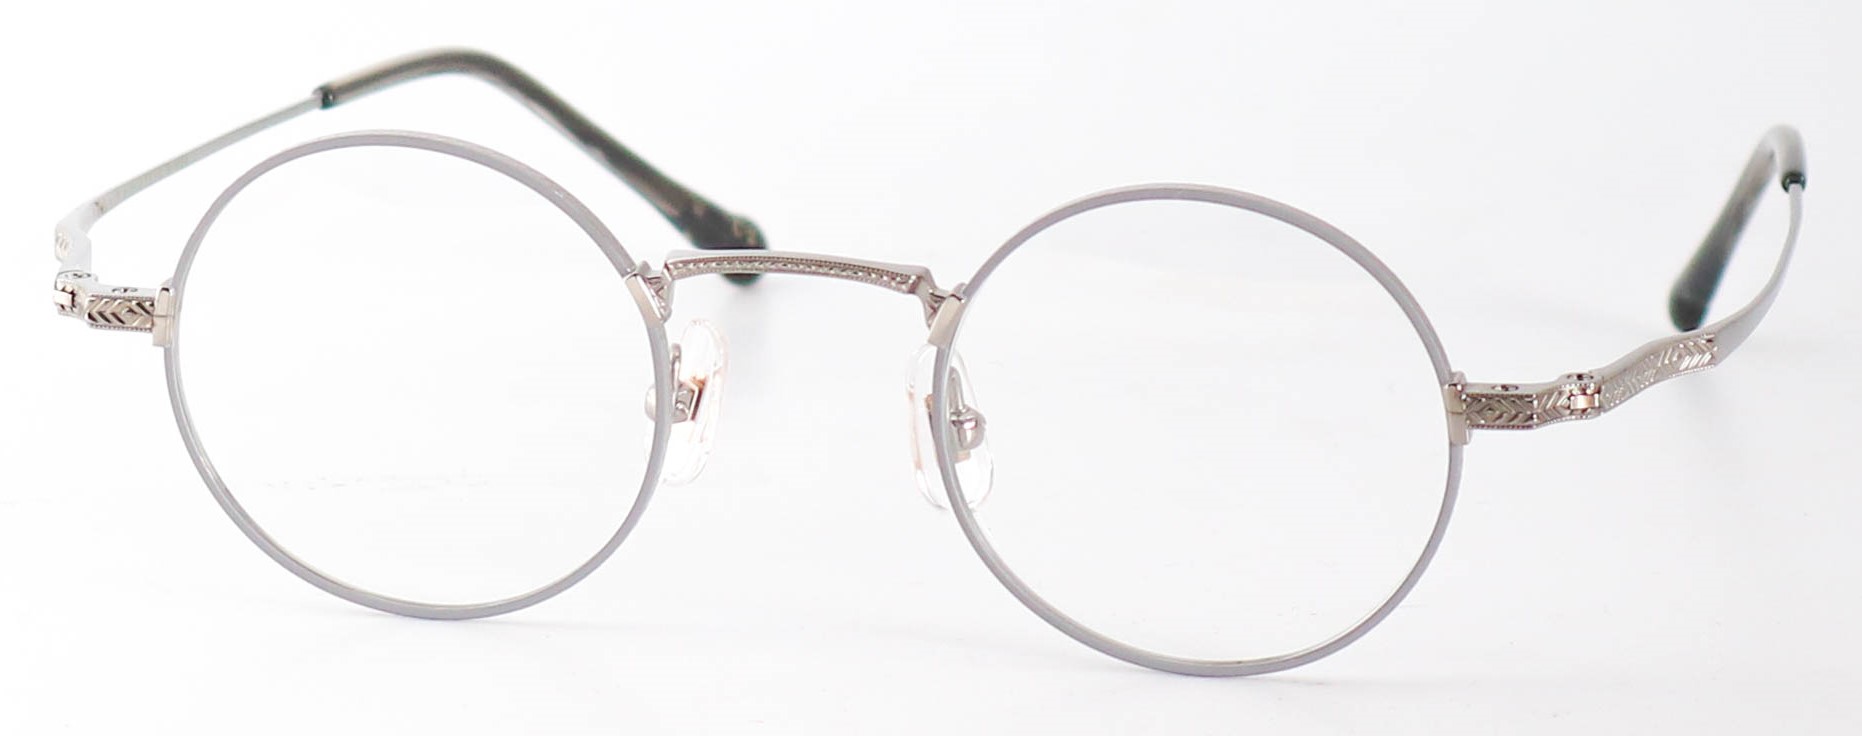 眼鏡のカラータイプC-2 Gray-Matt/Gray